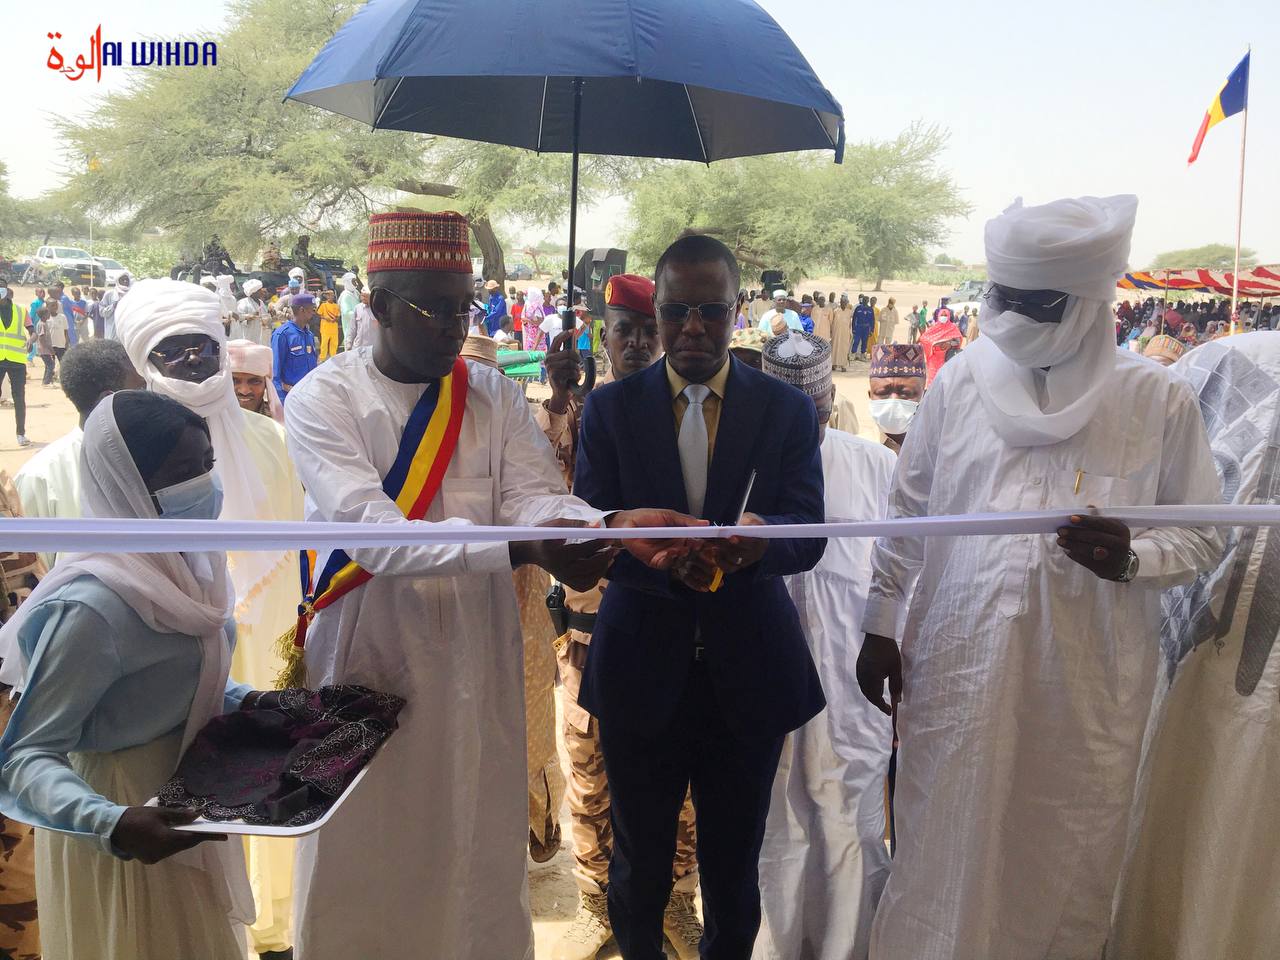 Tchad : la mairie de Massakory inaugure deux centres de santé pour la population